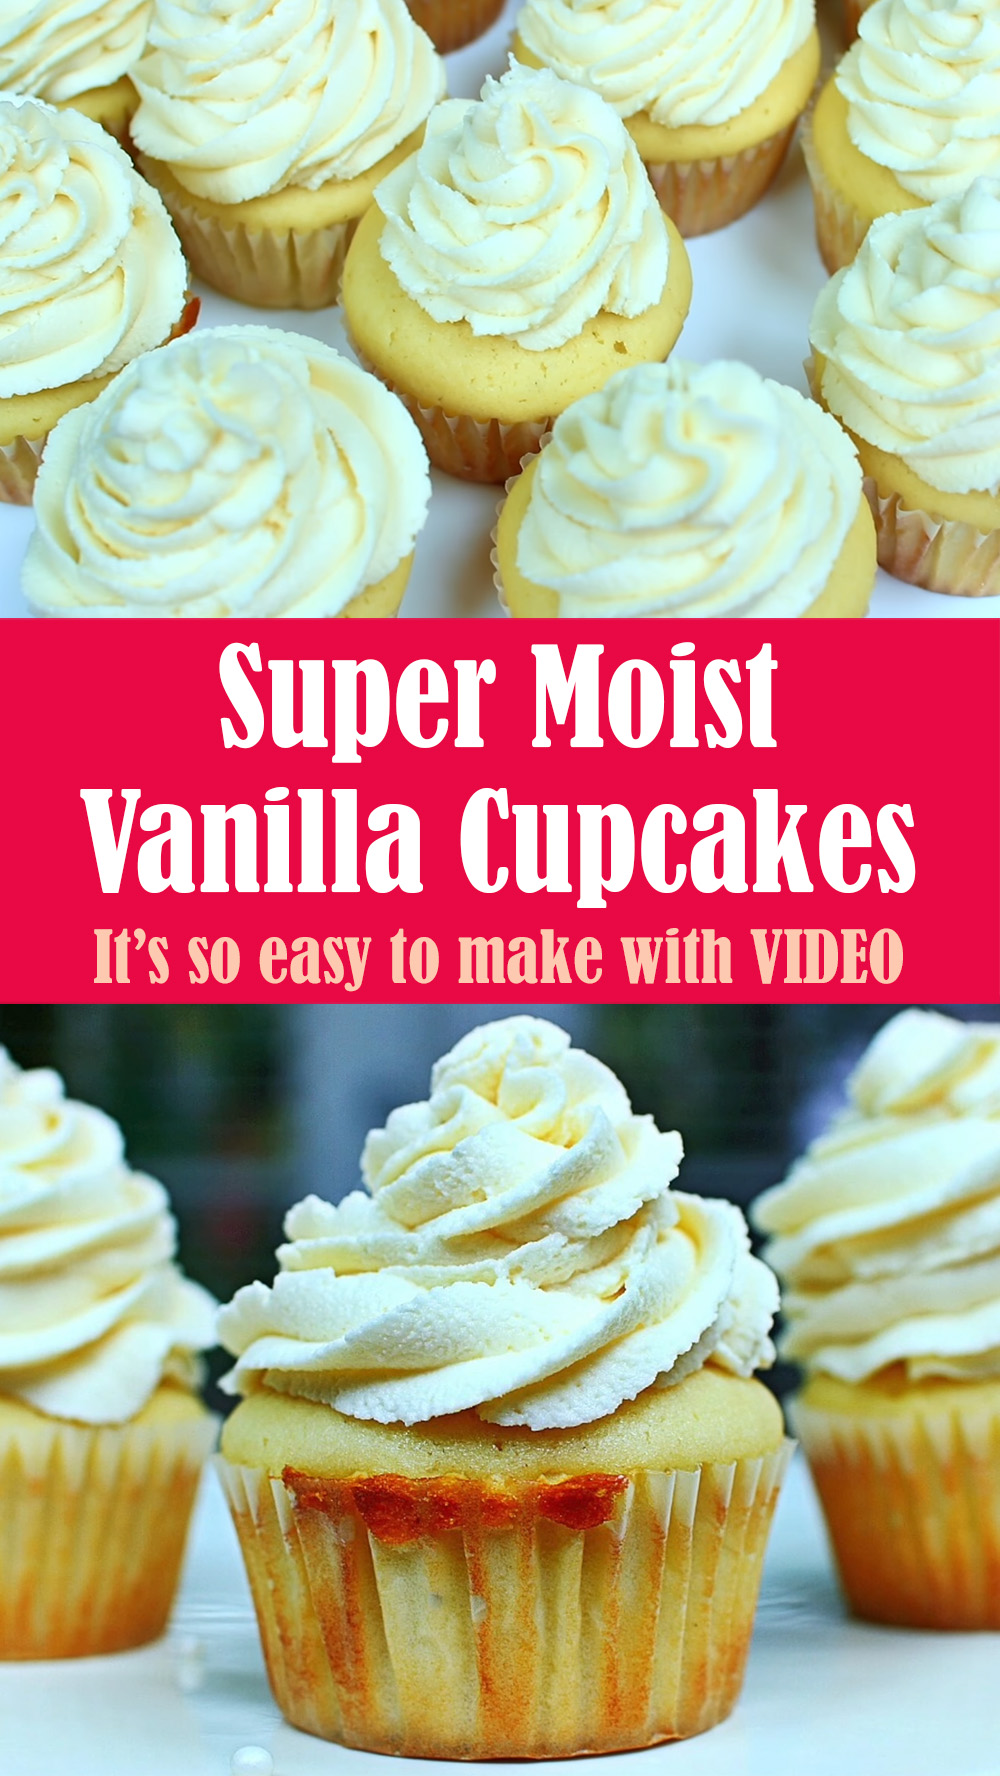 Super Moist Vanilla Cupcakes